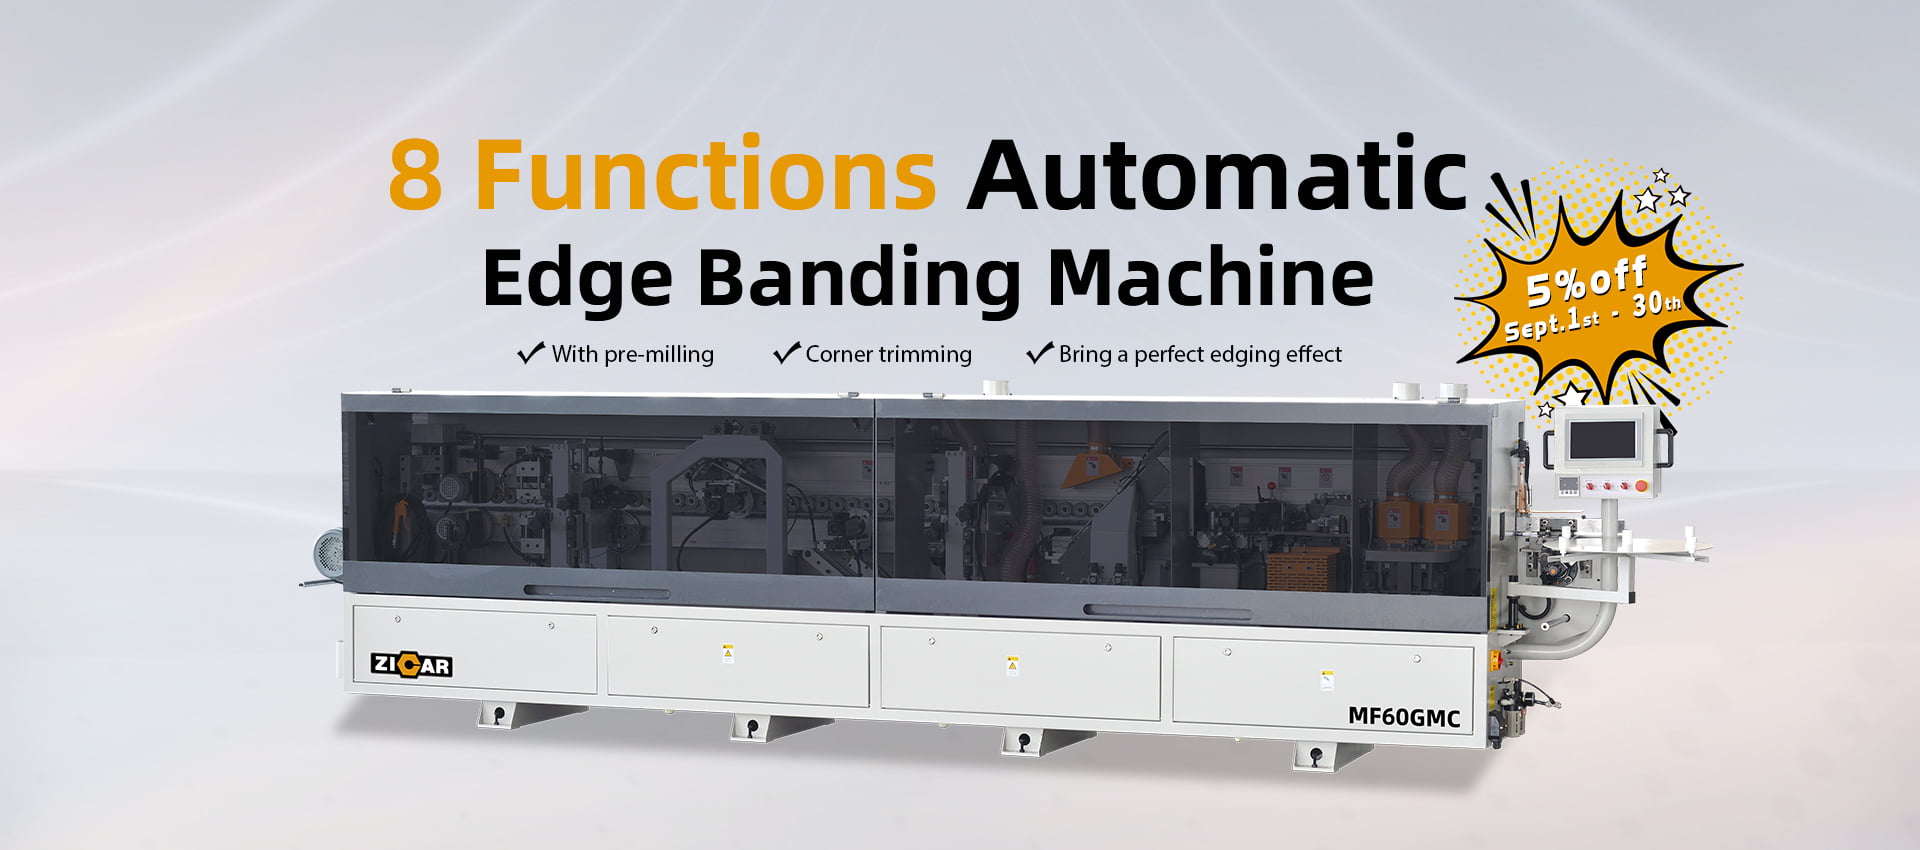 8 functions Edge Banding Machine MF60GMC 9.04